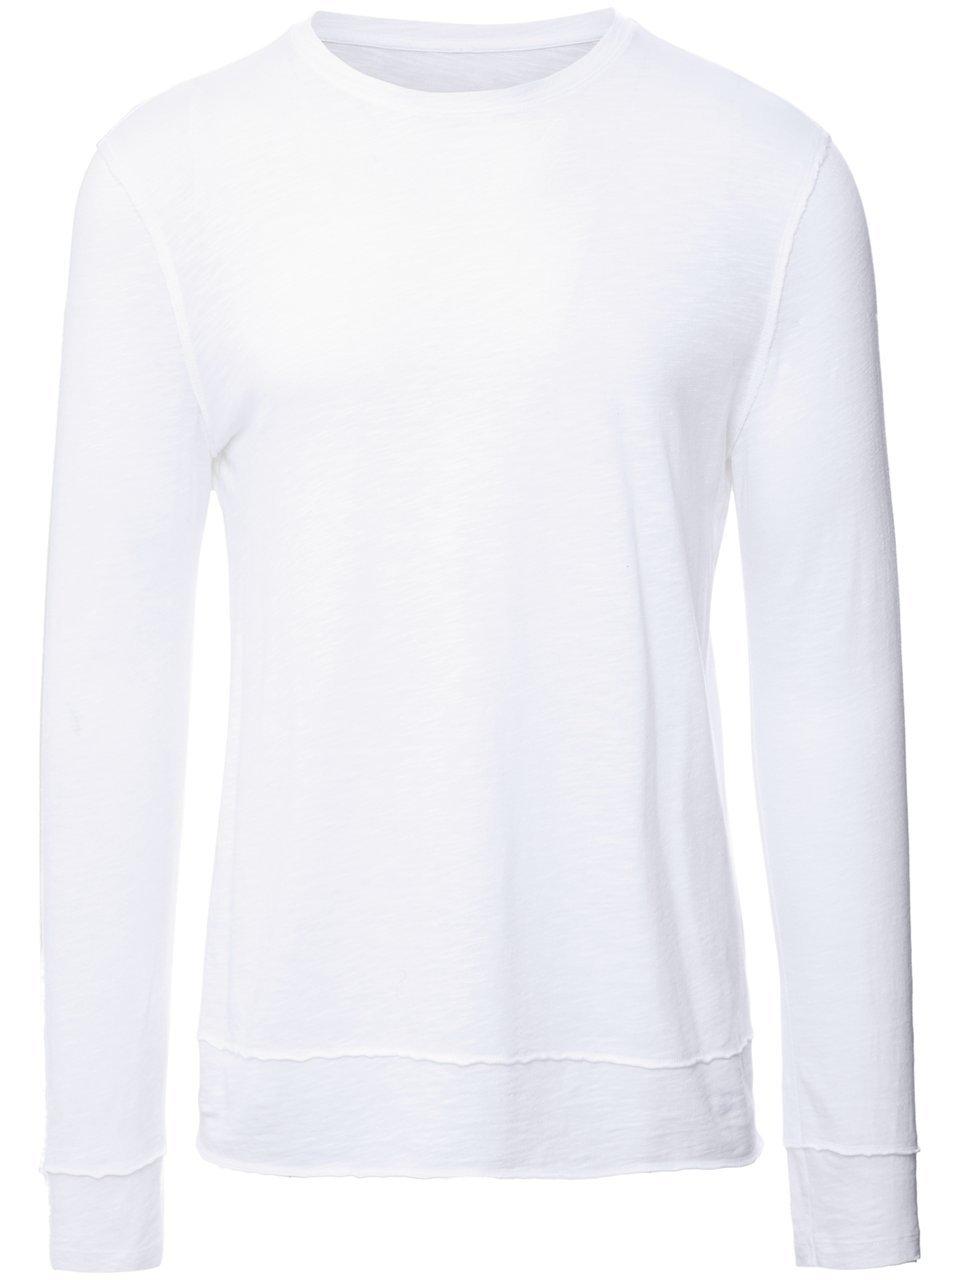 Le sweatshirt en jersey  Juvia blanc